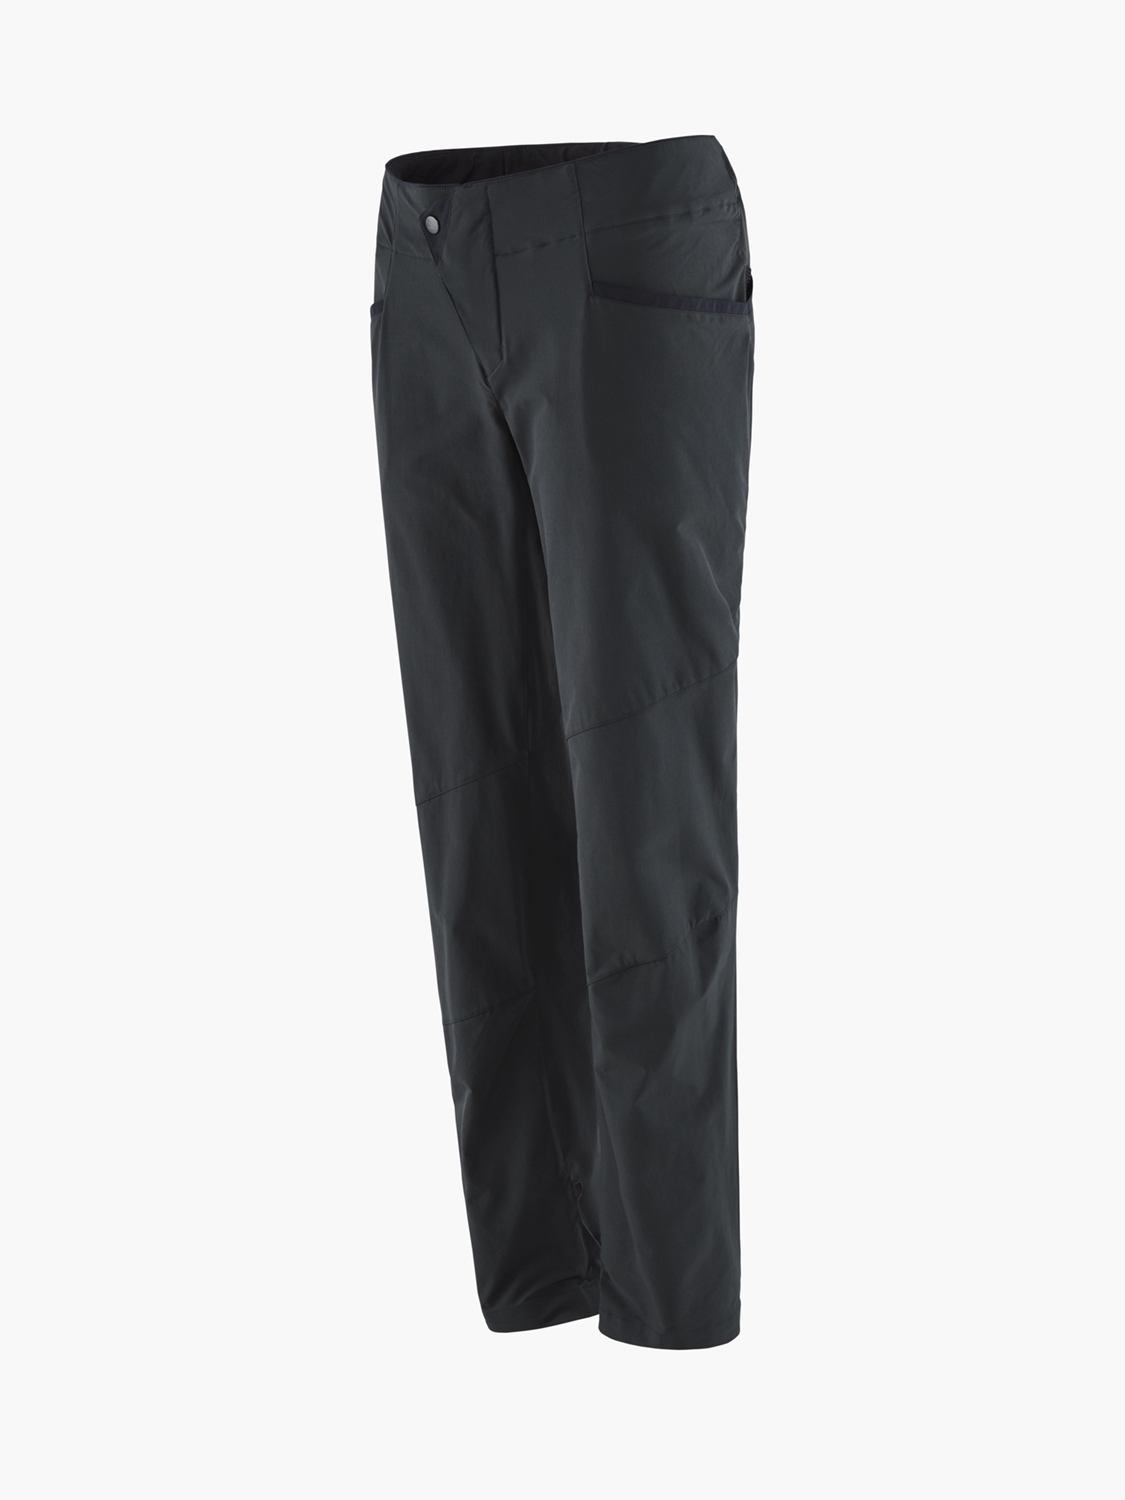 Klättermusen Women's Vanadis 2.0 Pants | Dark Grey - Klättermusen